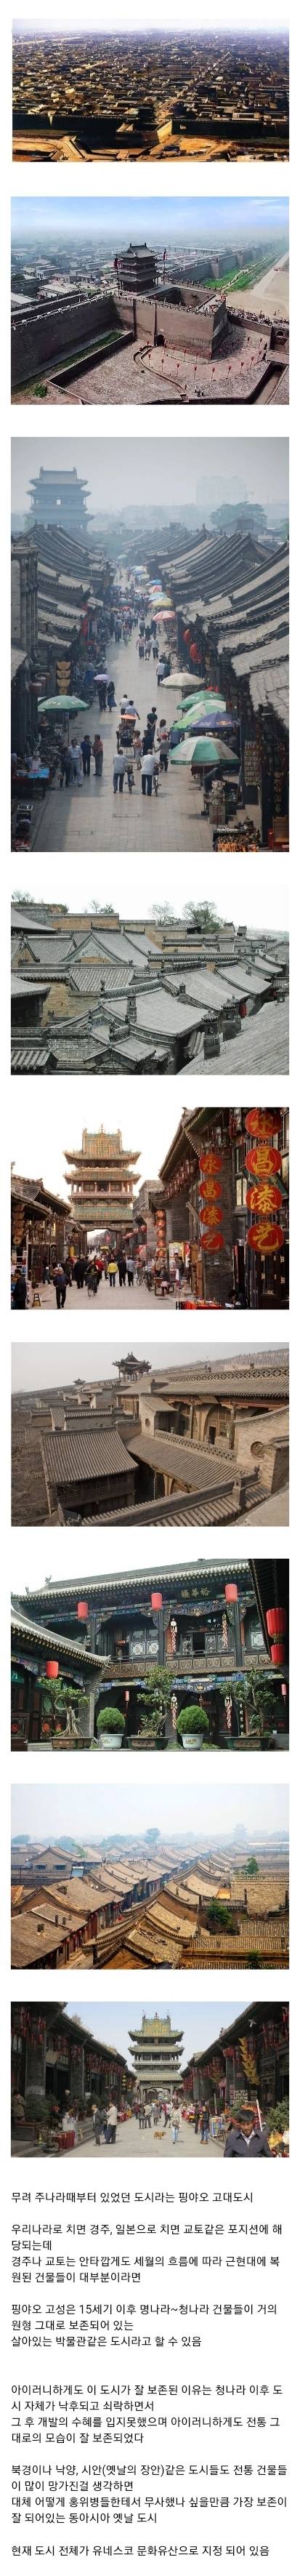 동아시아에서 가장 옛날 모습 그대로 보존이 잘 되어있는 전통 도시.jpg